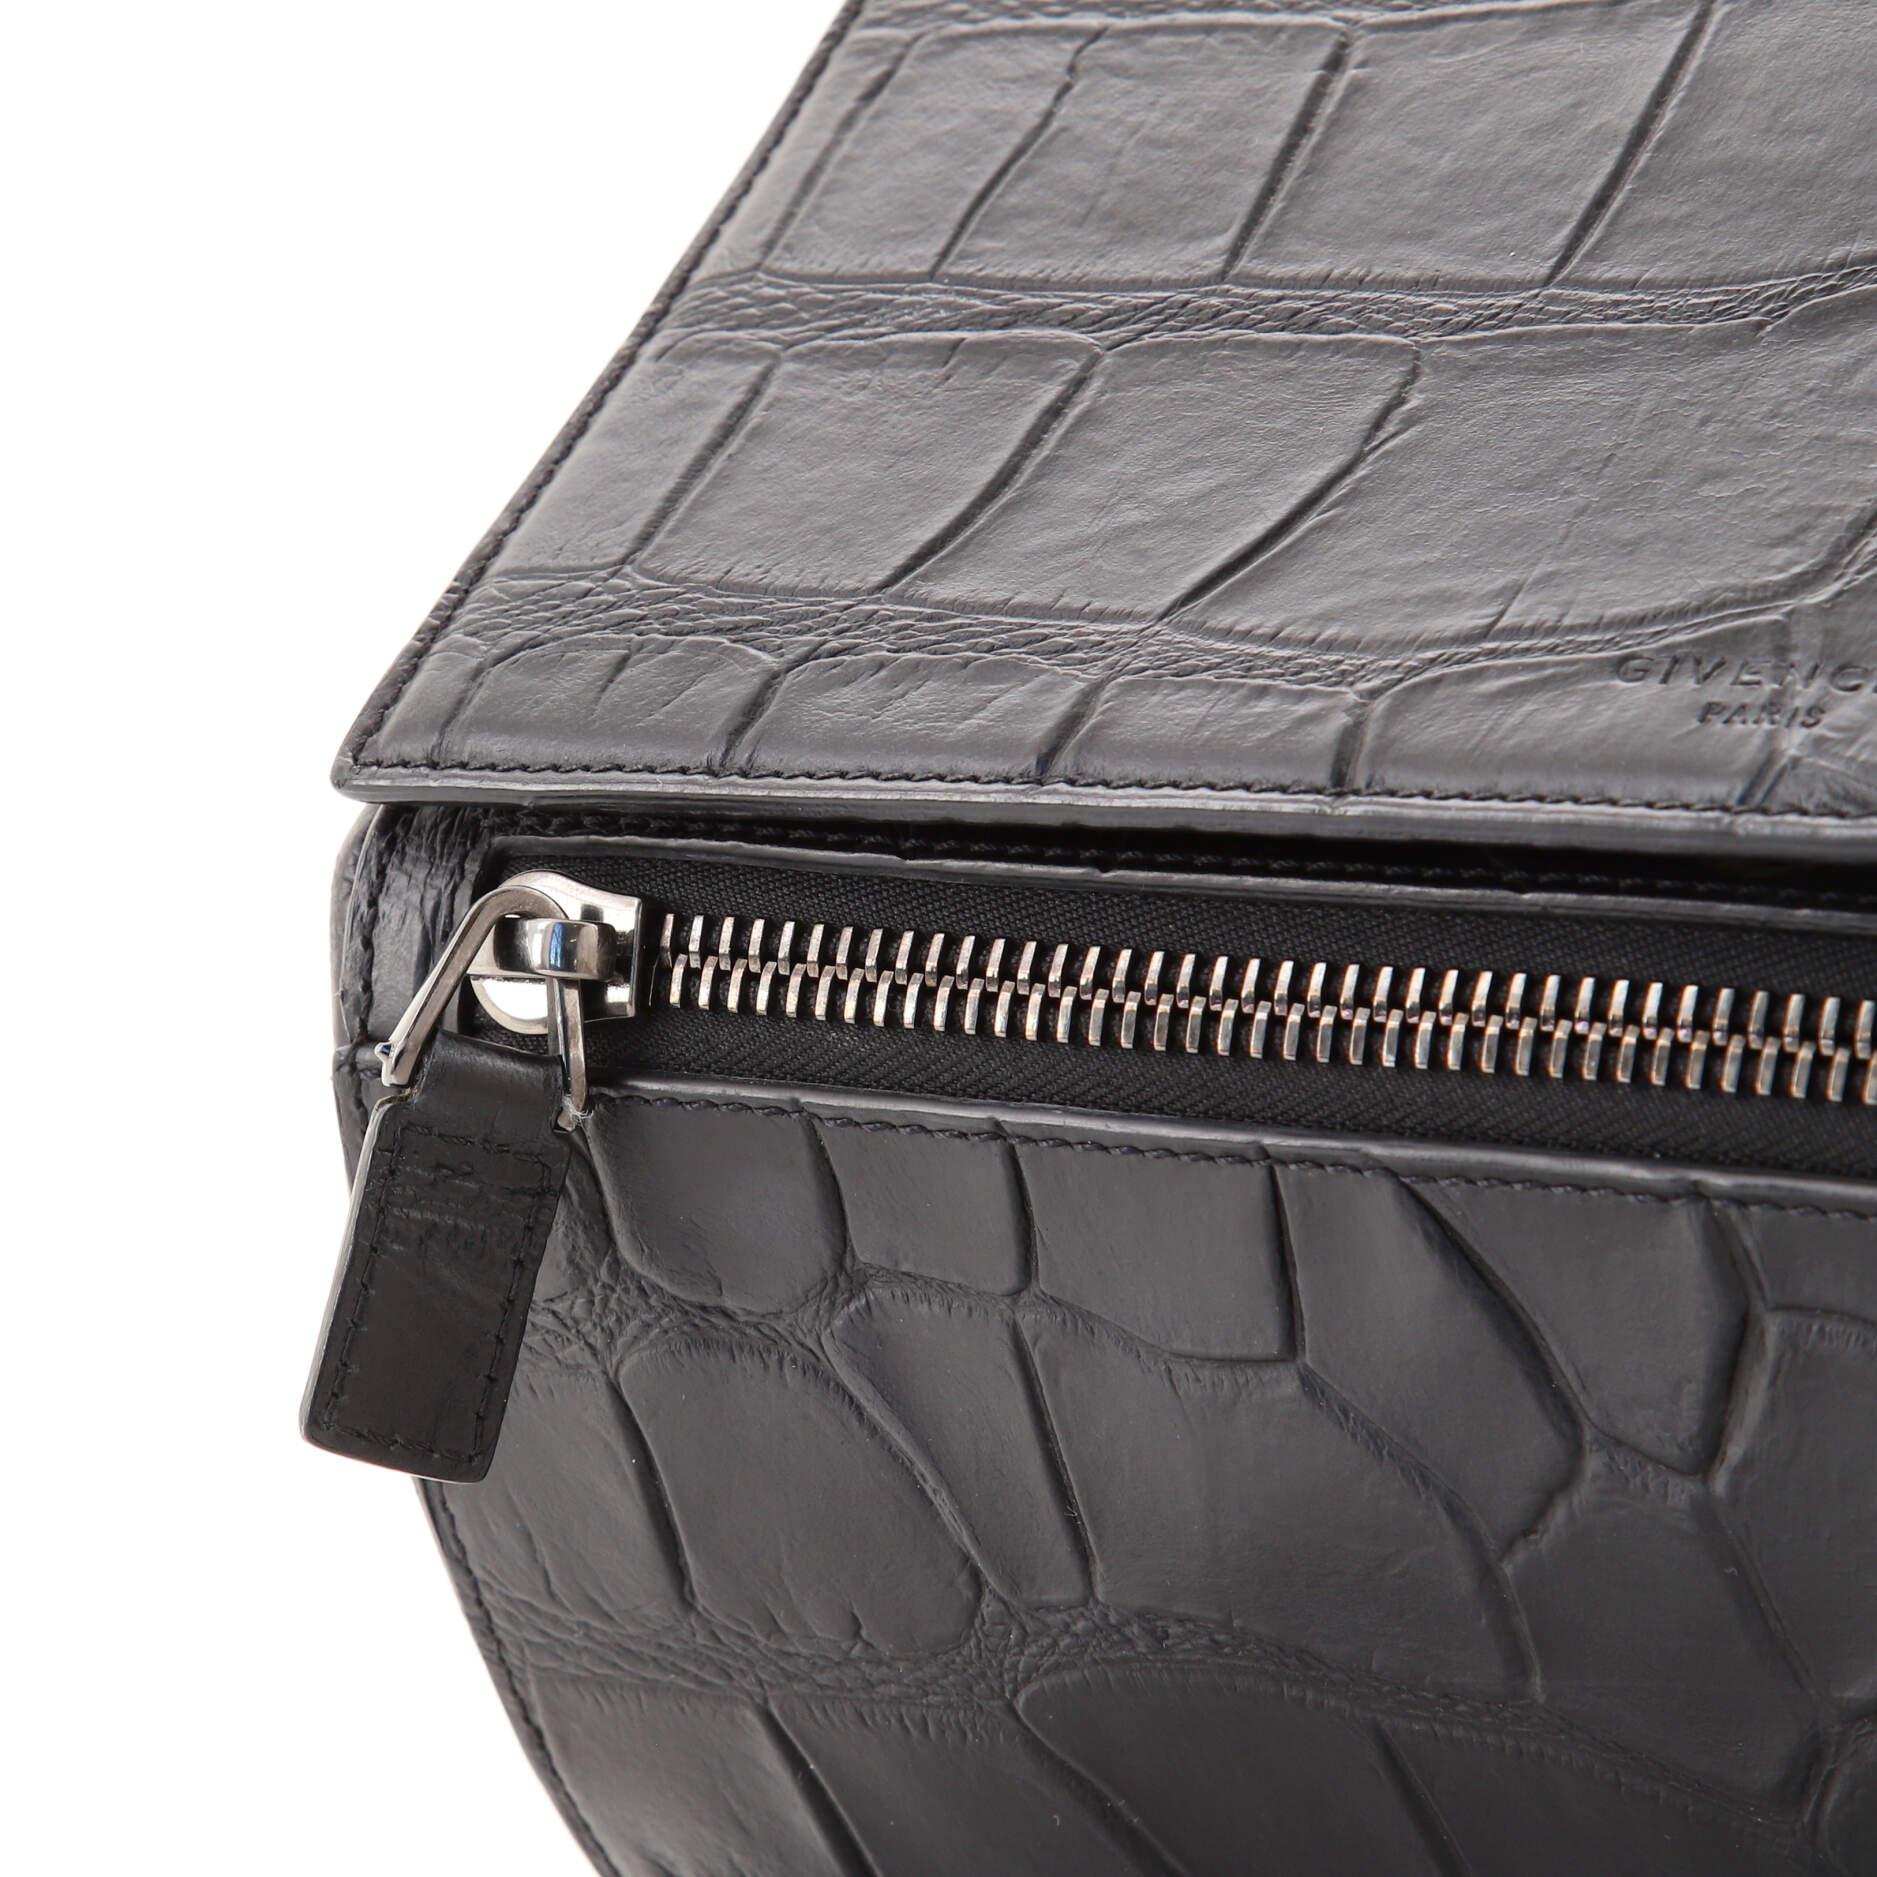 Givenchy Pandora Box Bag Crocodile Embossed Leather Medium 1